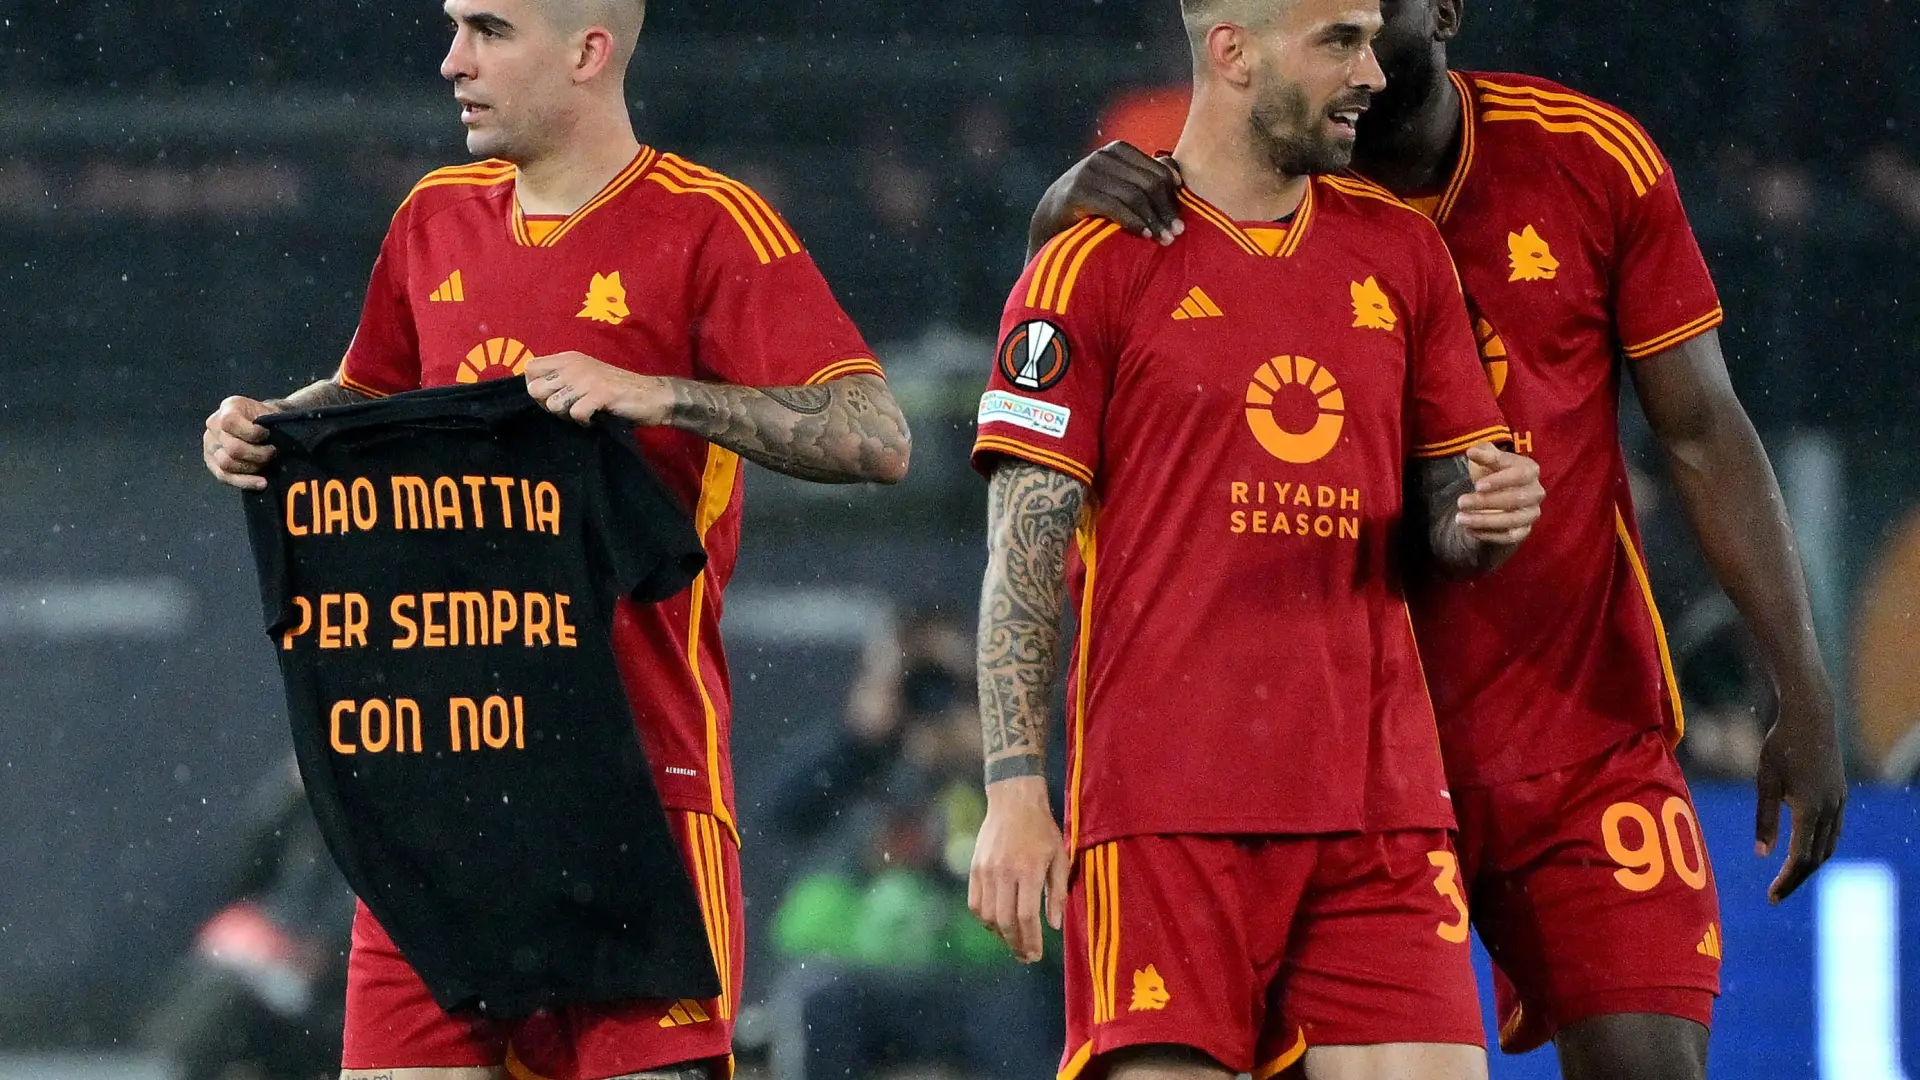 El bonito homenaje de Mancini al futbolista de 26 fallecido en Italia: "Adiós Mattia, para siempre con nosotros"